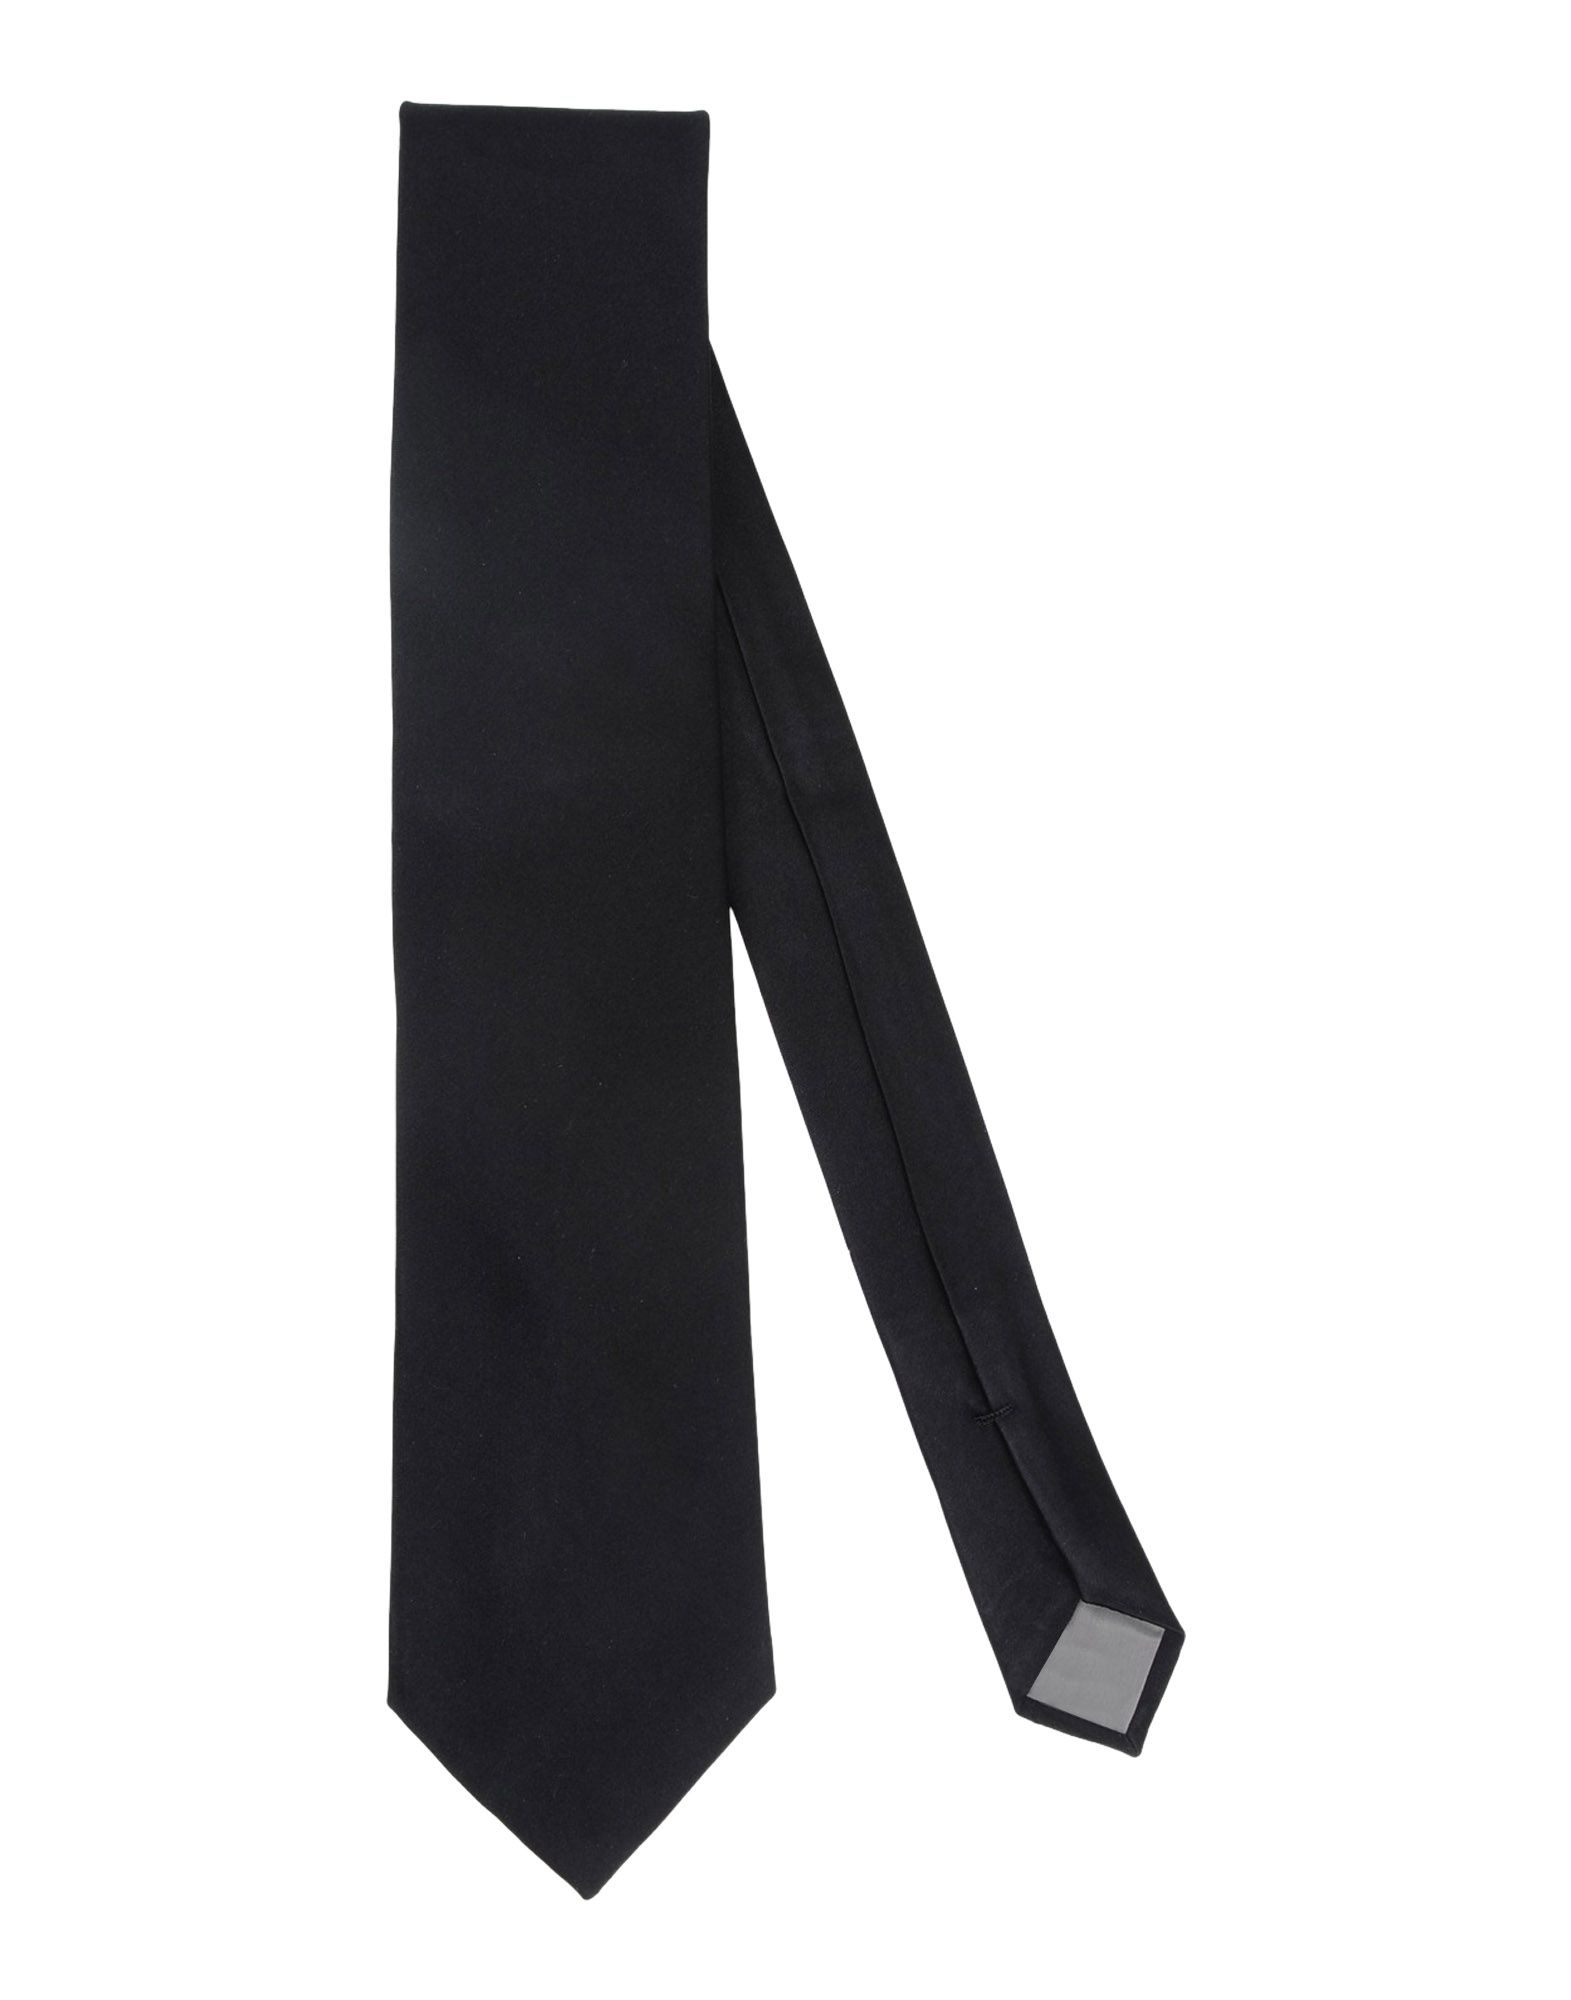 Lyst - Ck Calvin Klein Tie in Black for Men